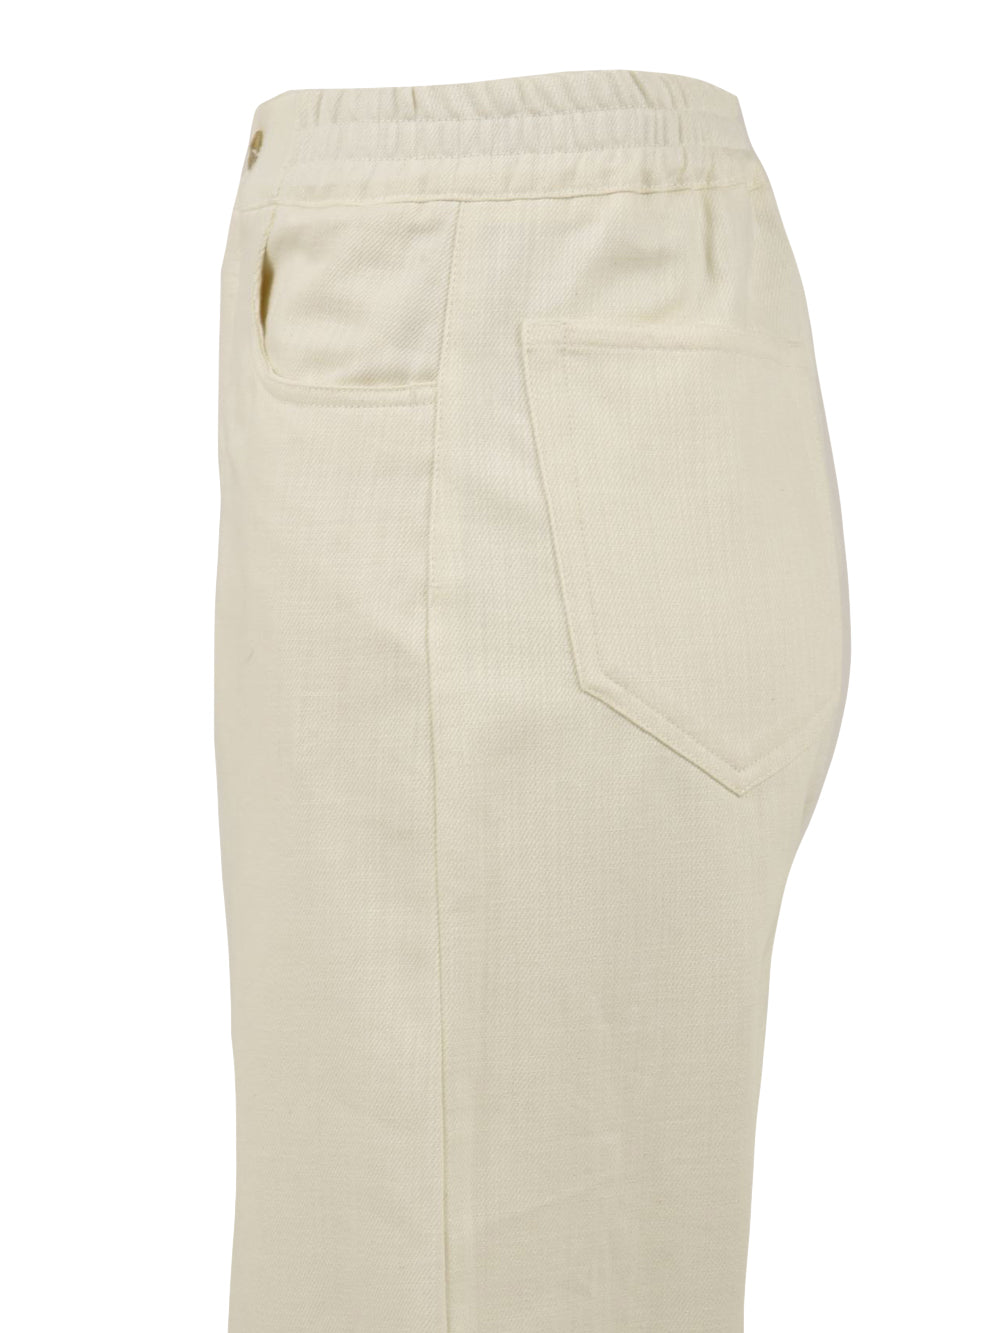 Pantalone Donna Cortina con tasche posteriori quadrate